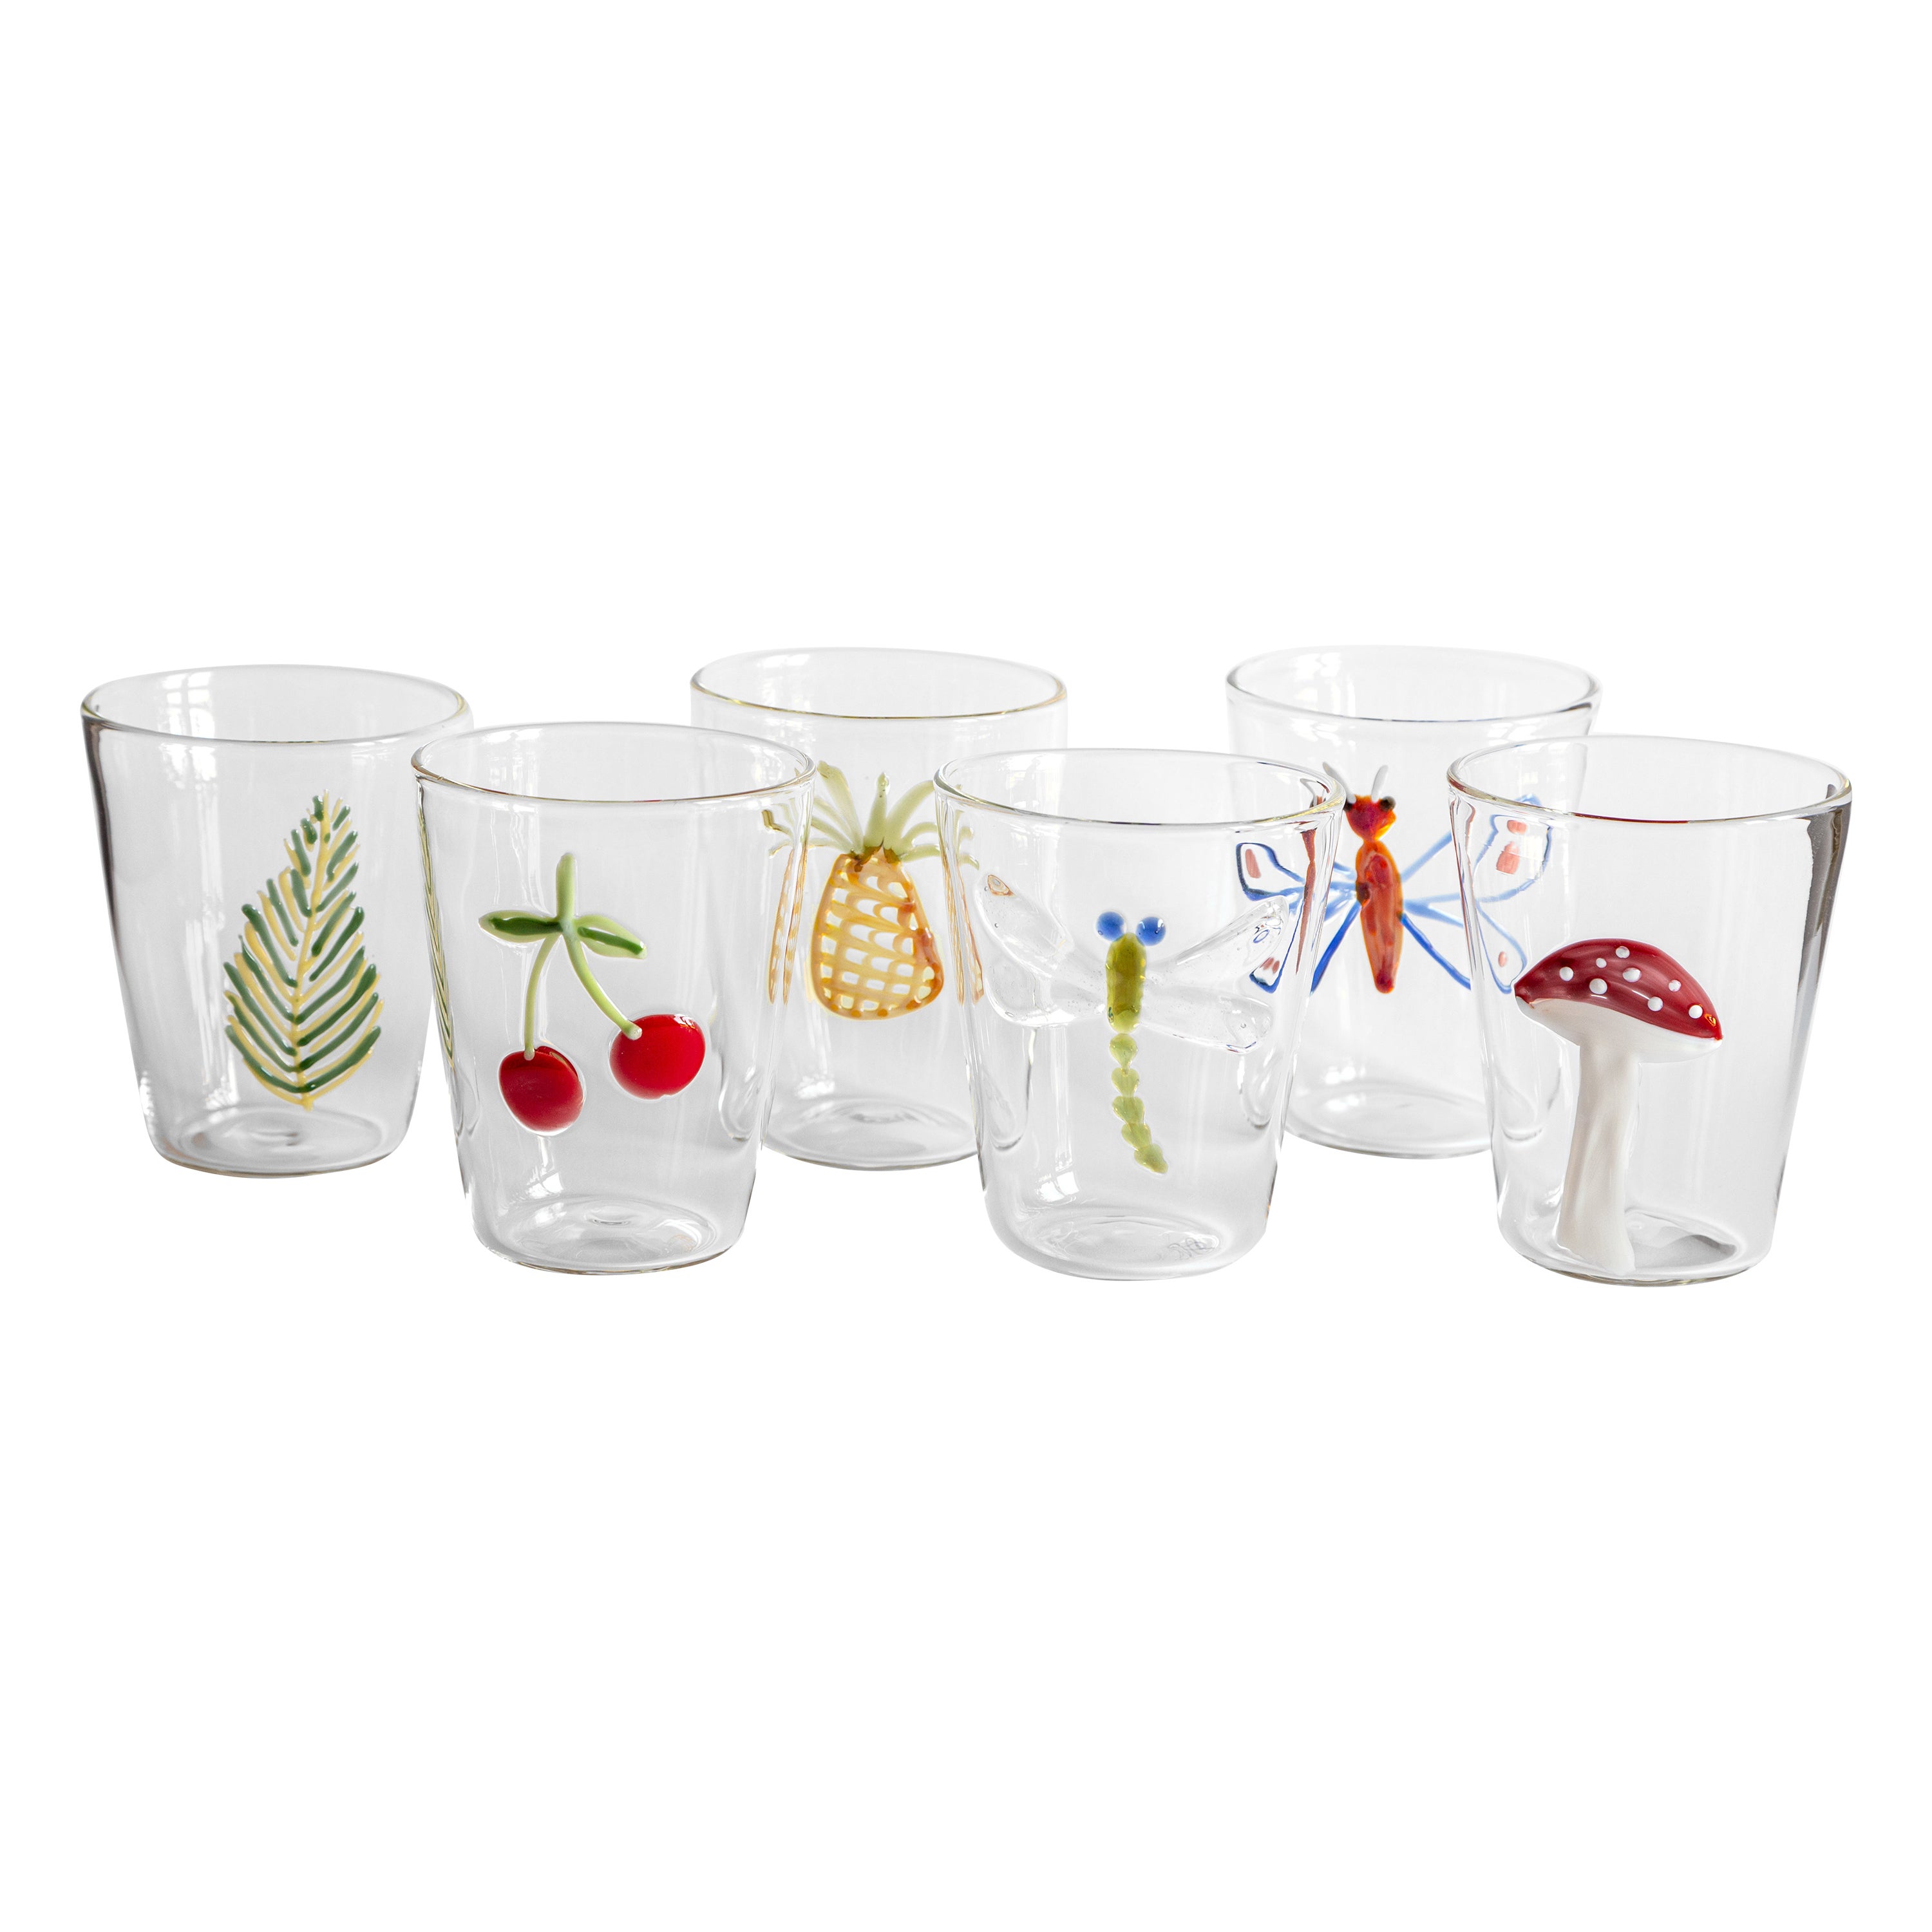 Cabinet de Curiosités, Contemporary Blown Water Glass with Decorative Details For Sale